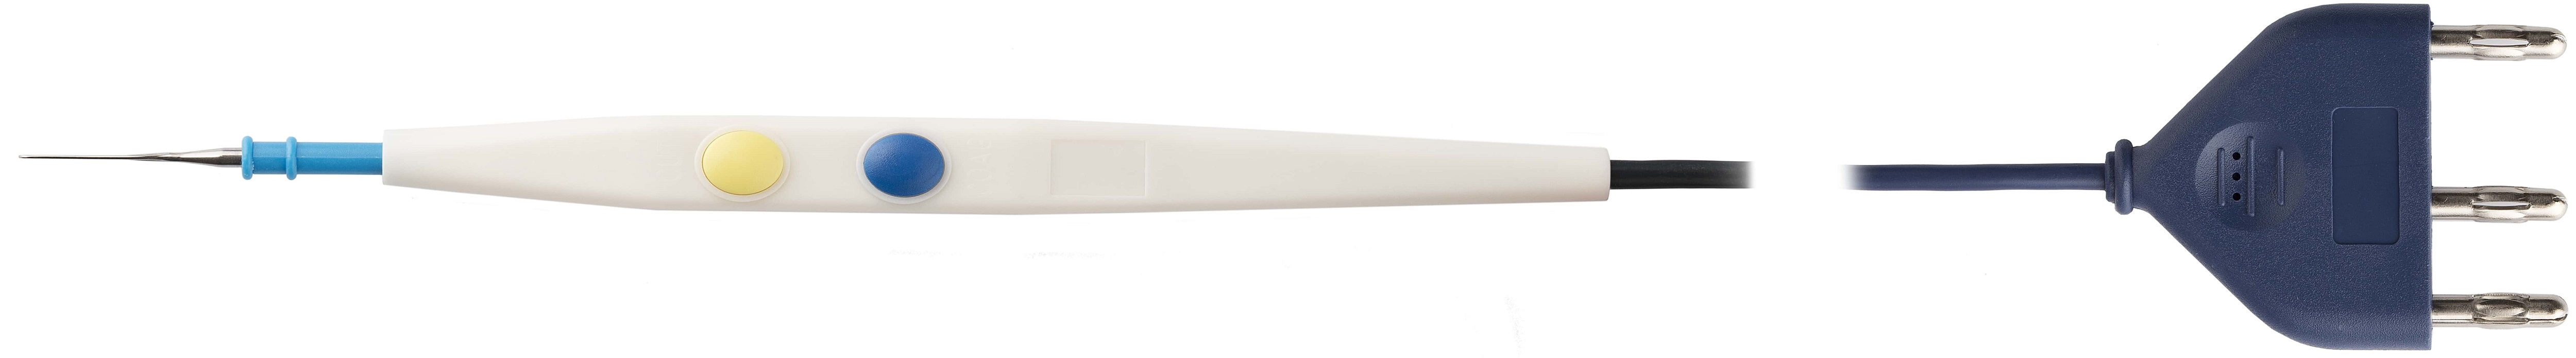 Ручка - держатель в комплекте с электродом-ножом